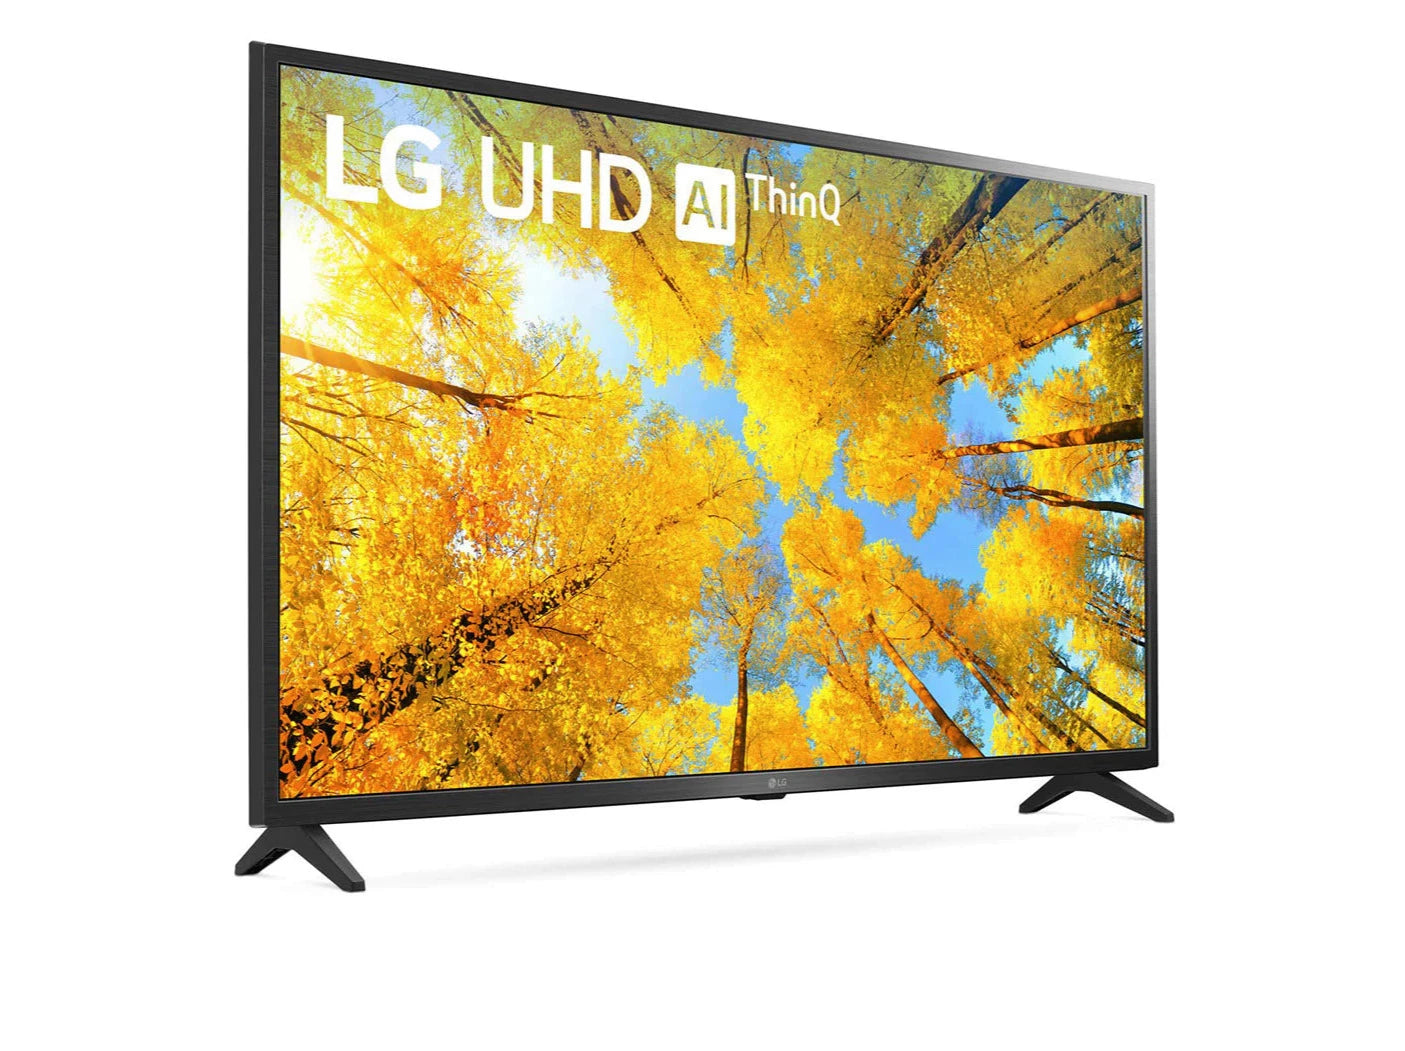 LG 55UQ7500 4K Smart TV előlnézetben enyhén jobbra fordítva, talpon. A kijelzőn őszies sárga levelű fák és lg uhd thinq ai logó.